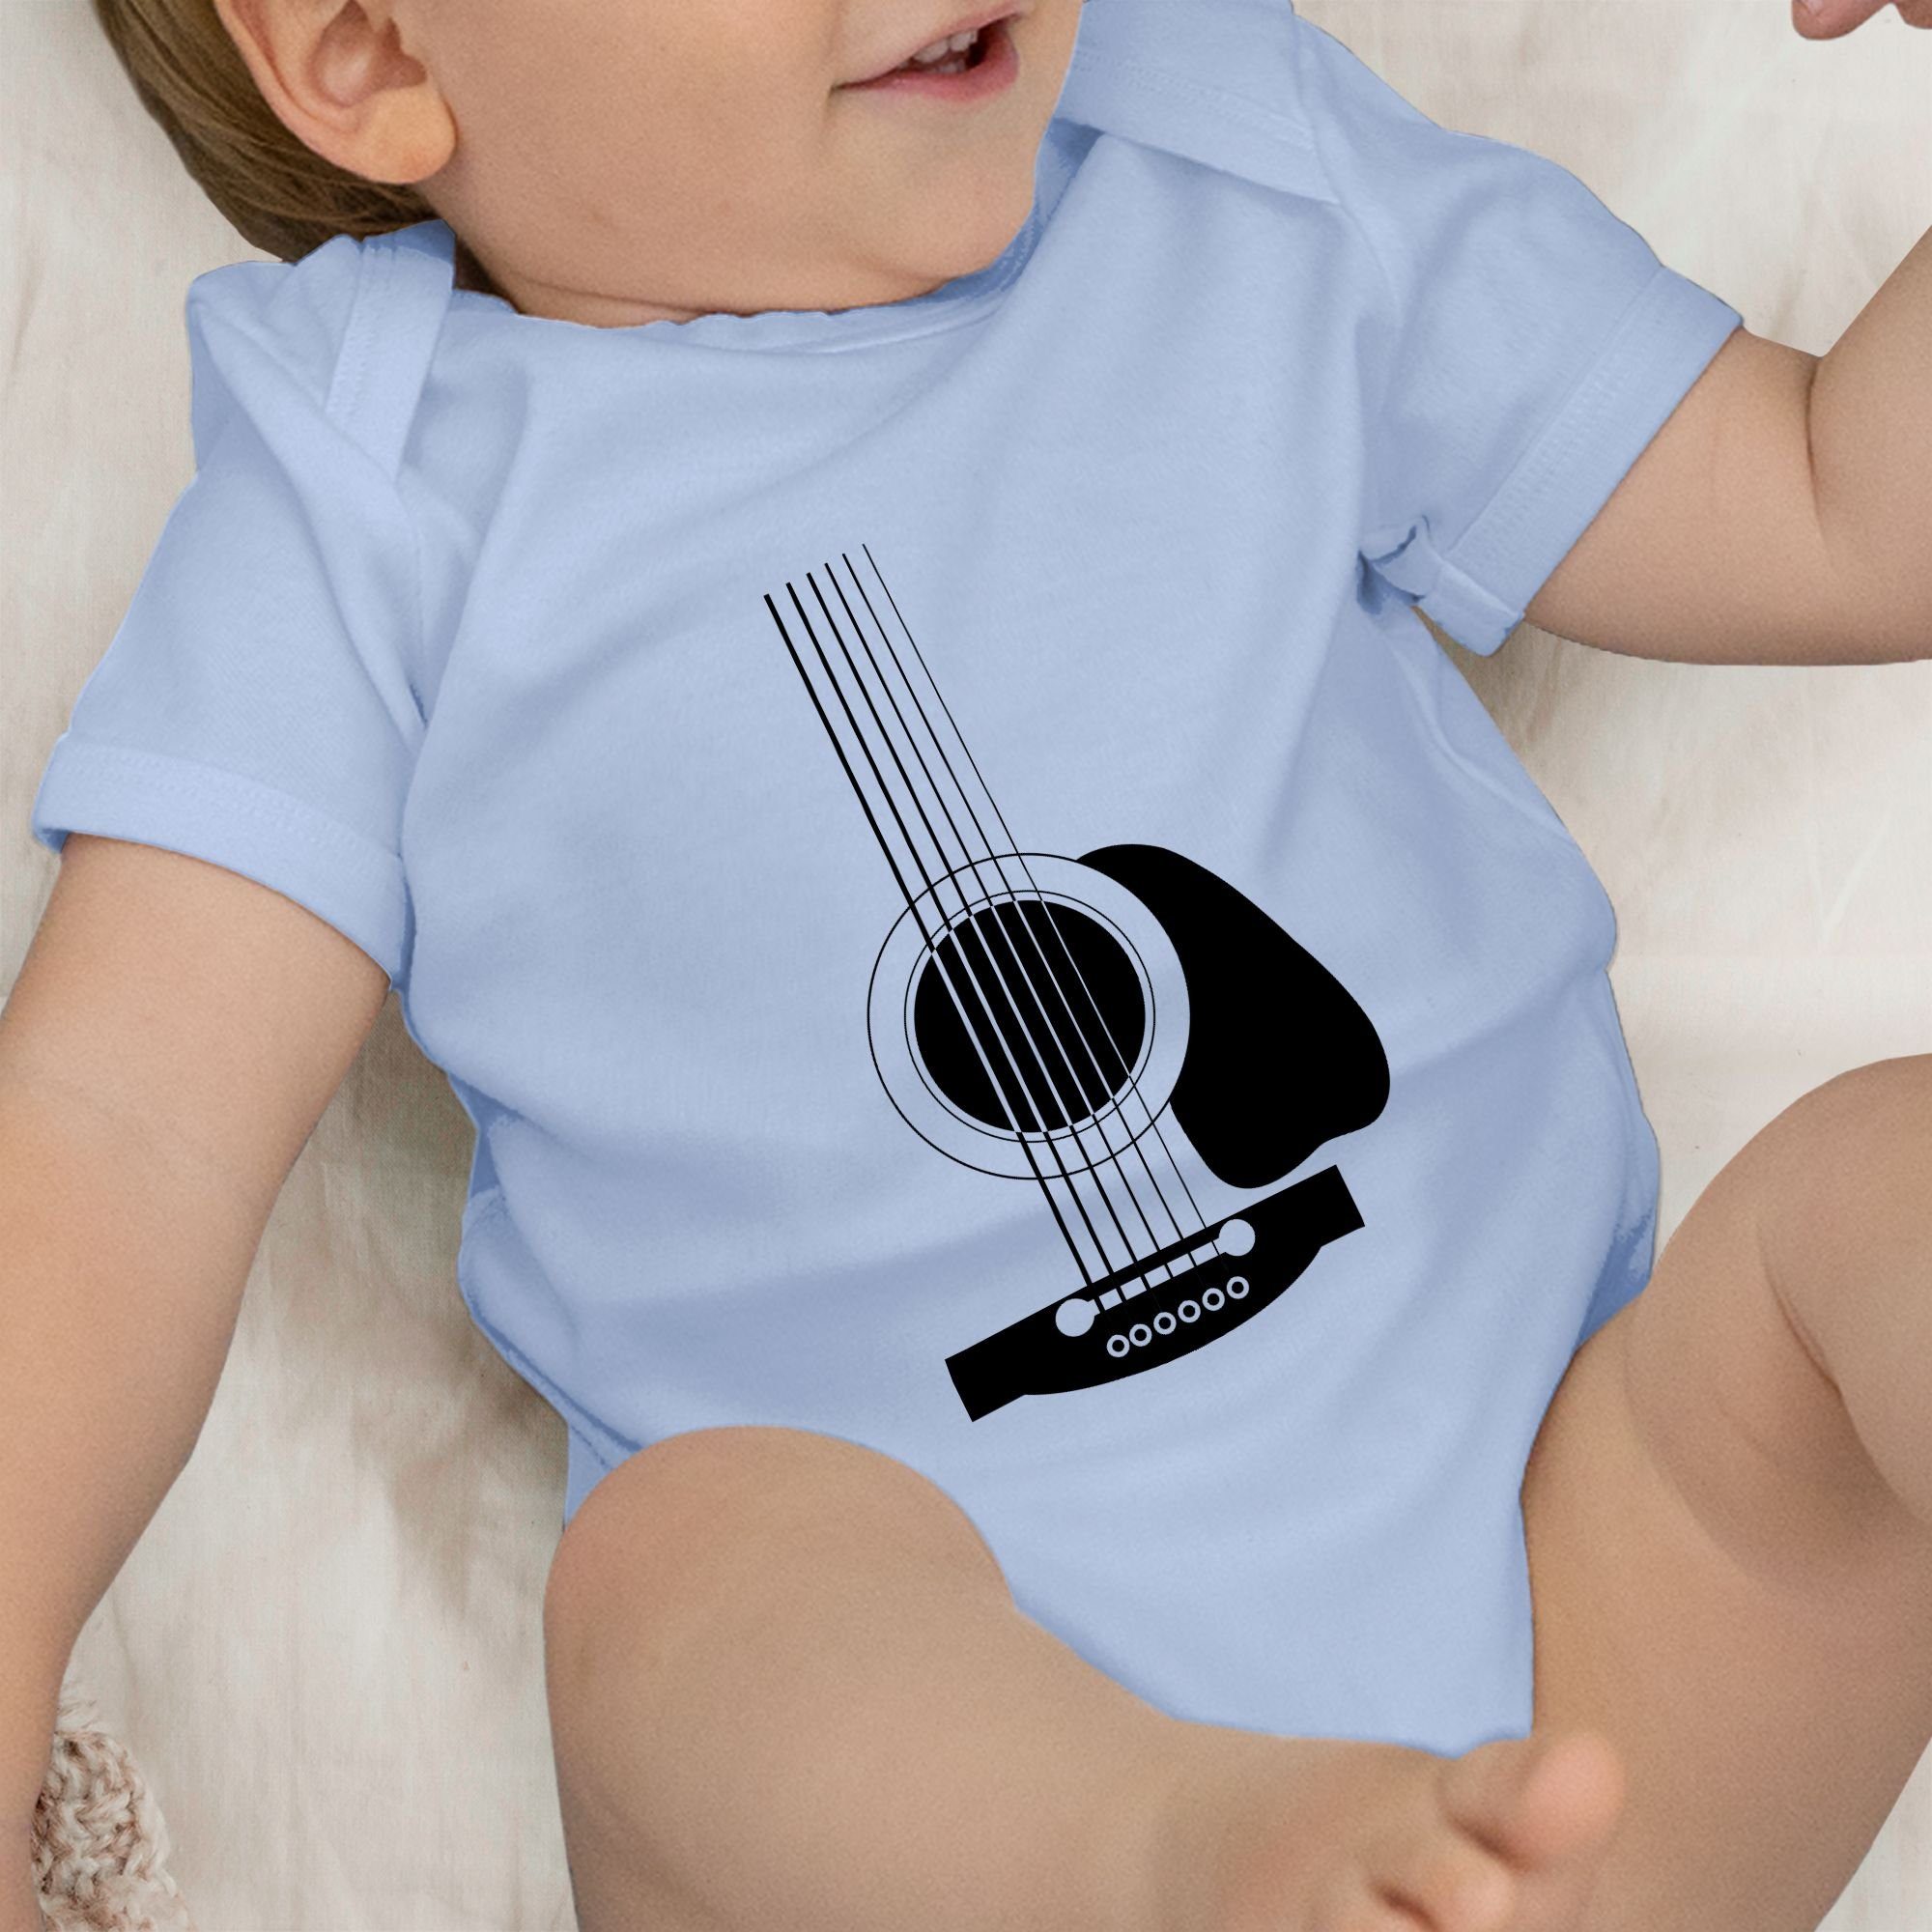 Shirtracer Shirtbody Gitarren Body Baby Junge Babyblau Strampler 2 & Mädchen